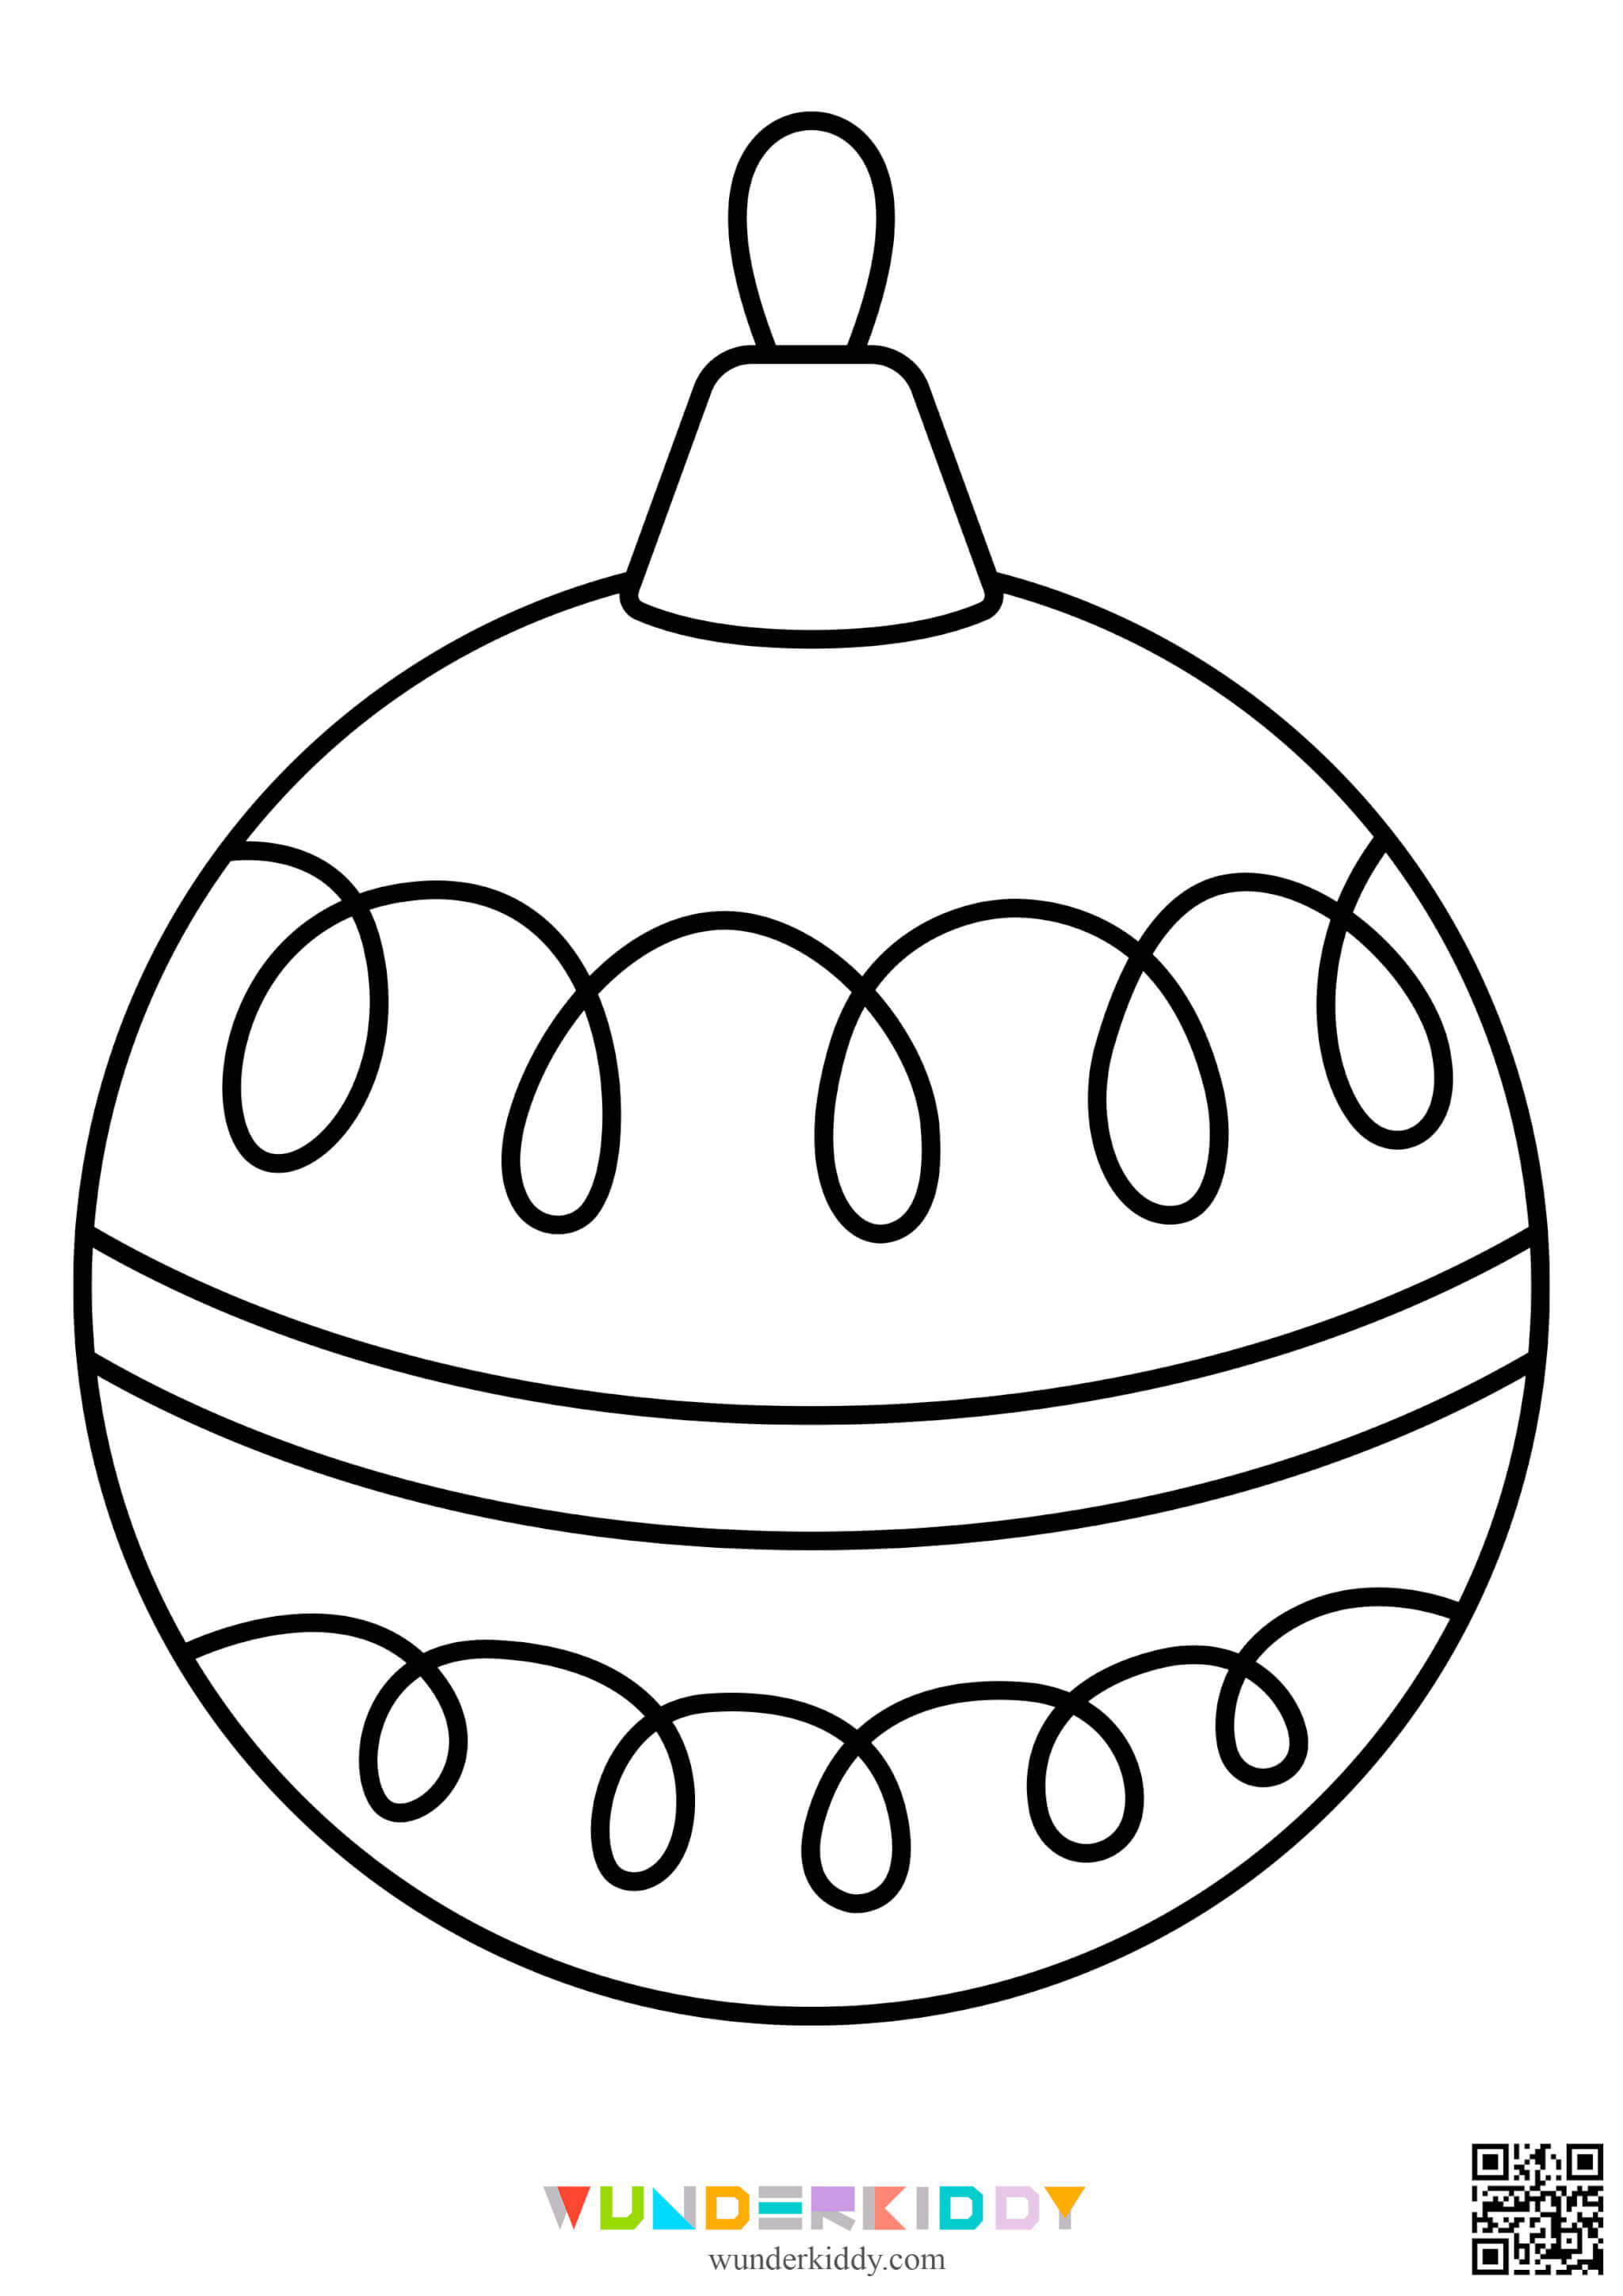 Раскраски ёлочных шаров для детей - Изображение 3